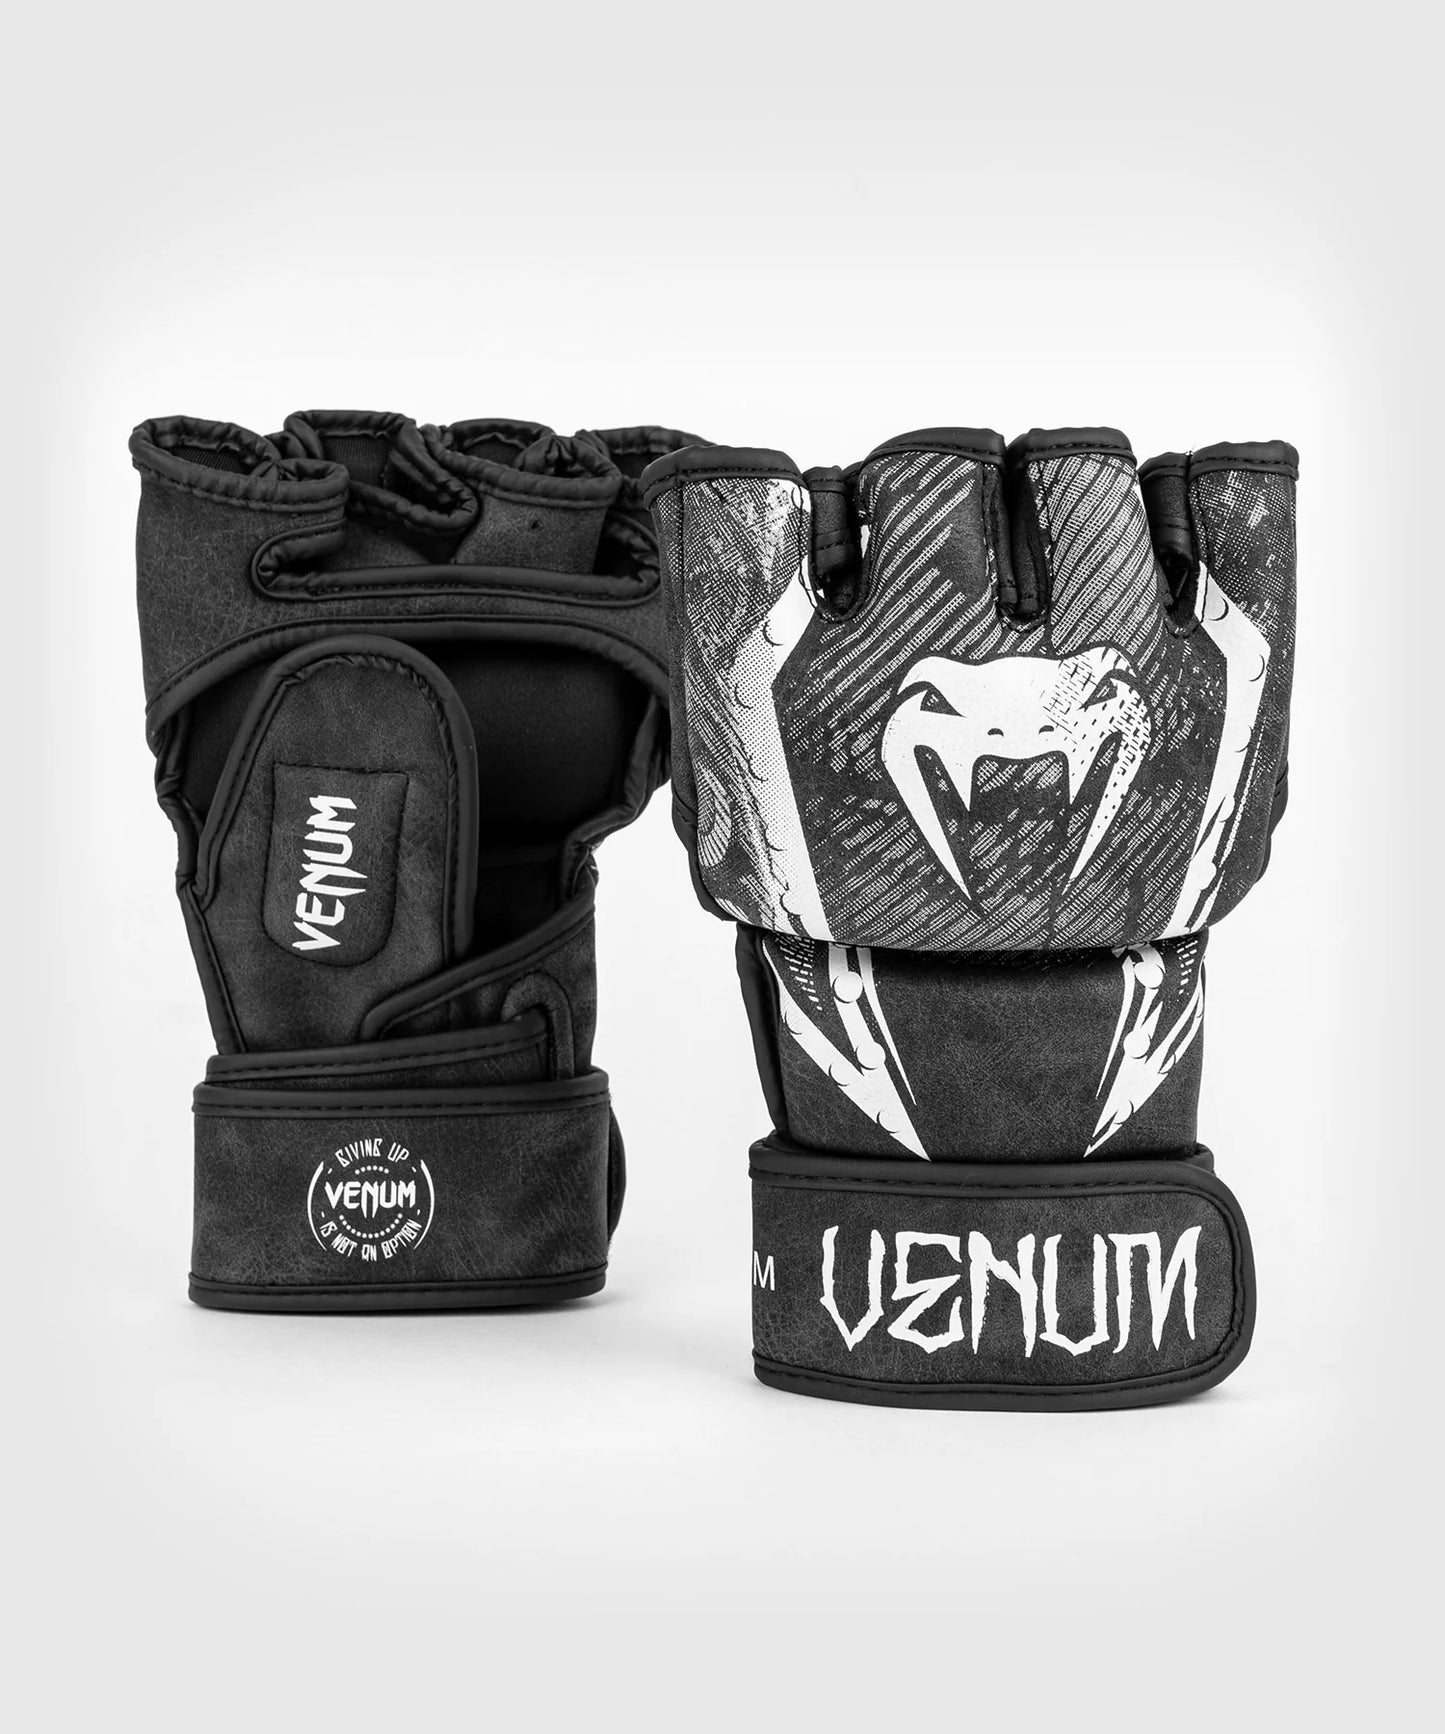 Gladiator 4.0 MMA Gloves - Black/White